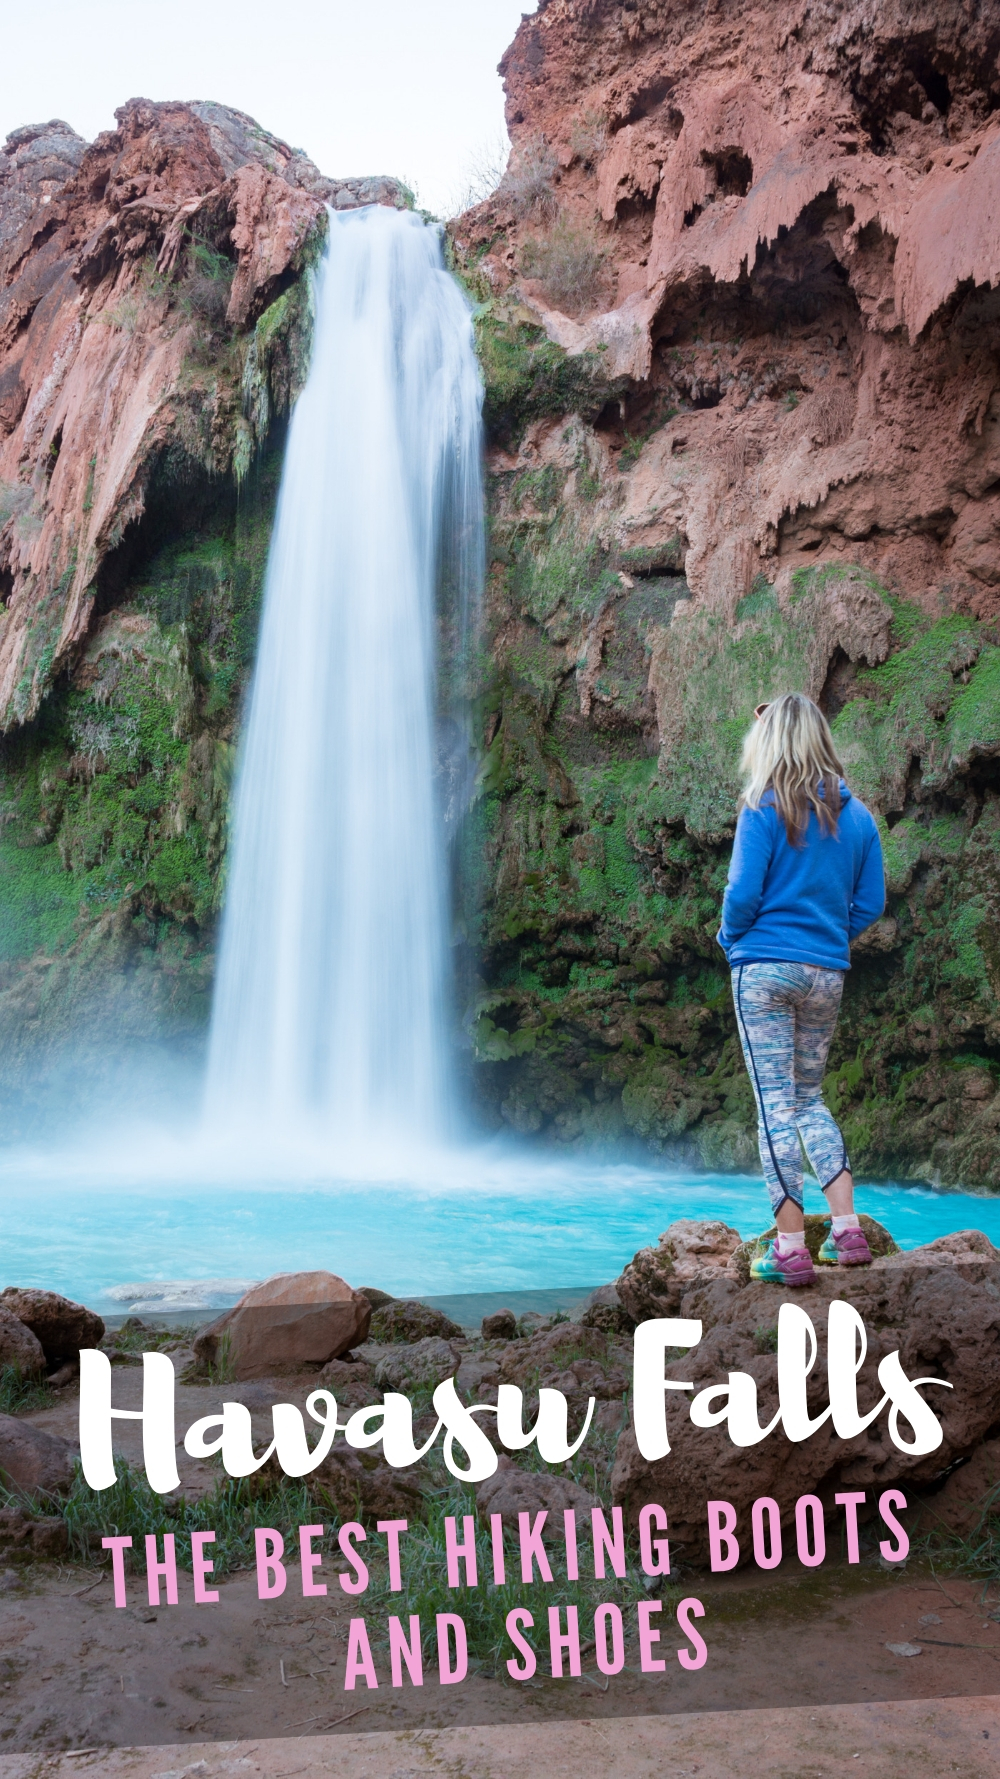 Havasu Falls, Arizona: The Best Hiking Shoes and Boots